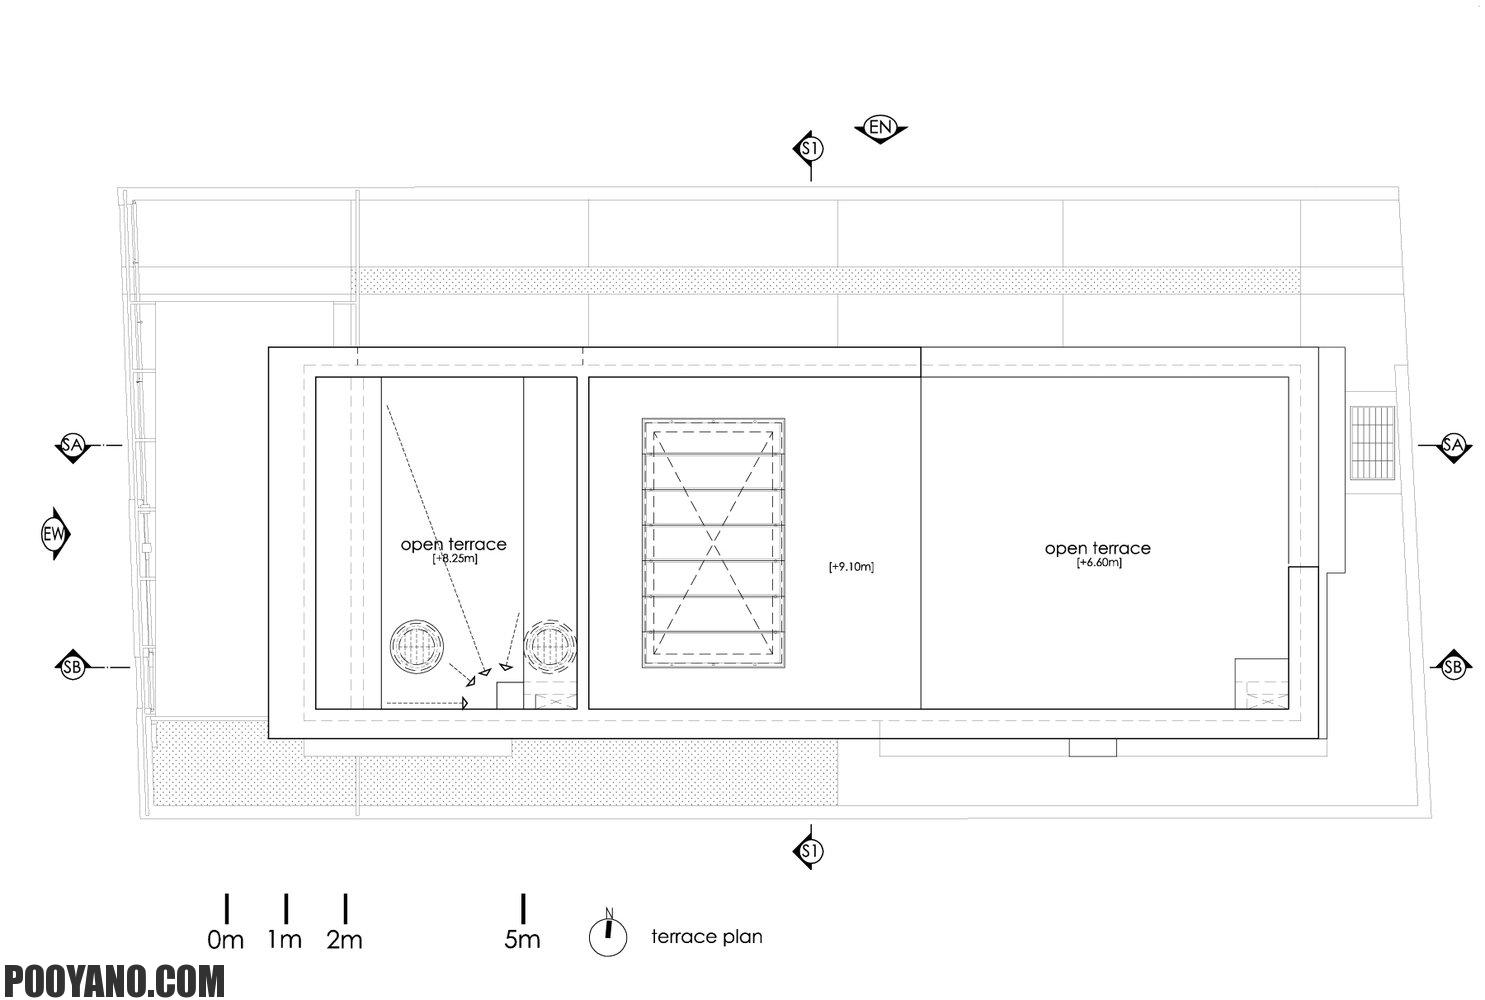 سایت پویانو-خانه مجلل با یک آتریوم باغ دار